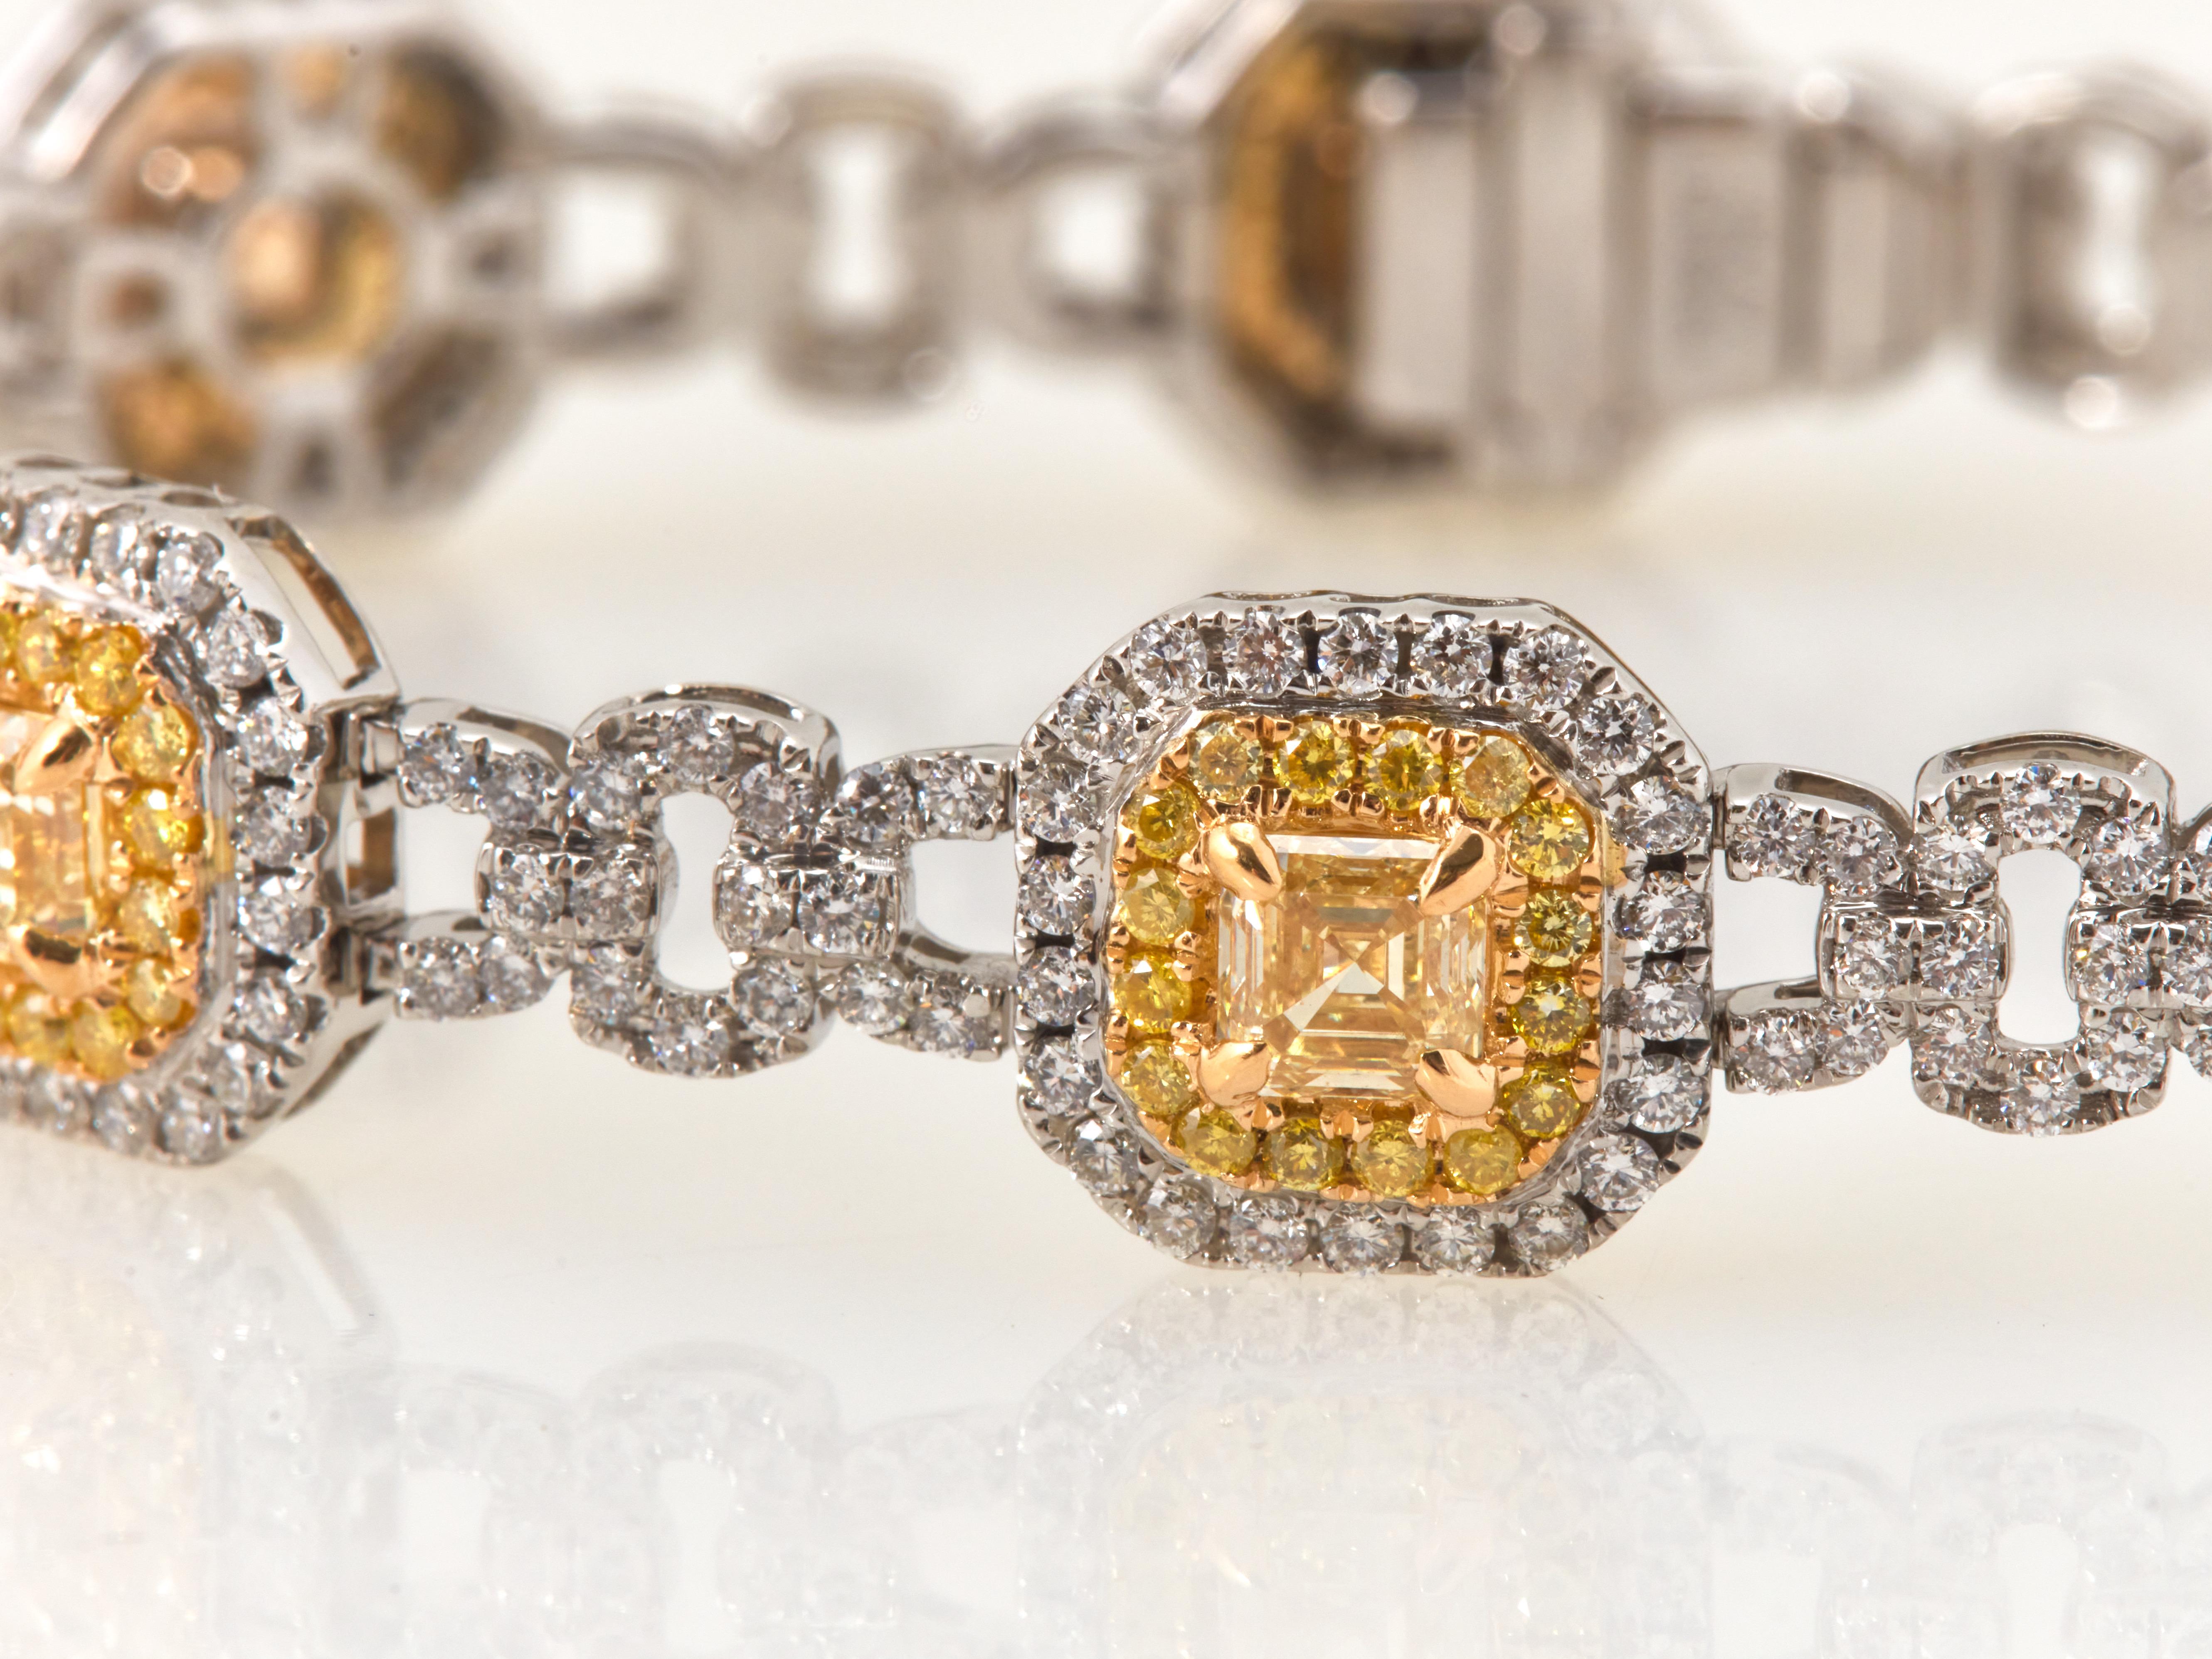 Lassen Sie sich von diesem atemberaubenden Armband mit 4,93 Karat gelben Diamanten im Asscher-Schliff verzaubern. Jeder gelbe Diamant ist liebevoll in eine Fassung aus 18 Karat Weiß- und Gelbgold eingebettet und wird von einem Halo aus 112 runden